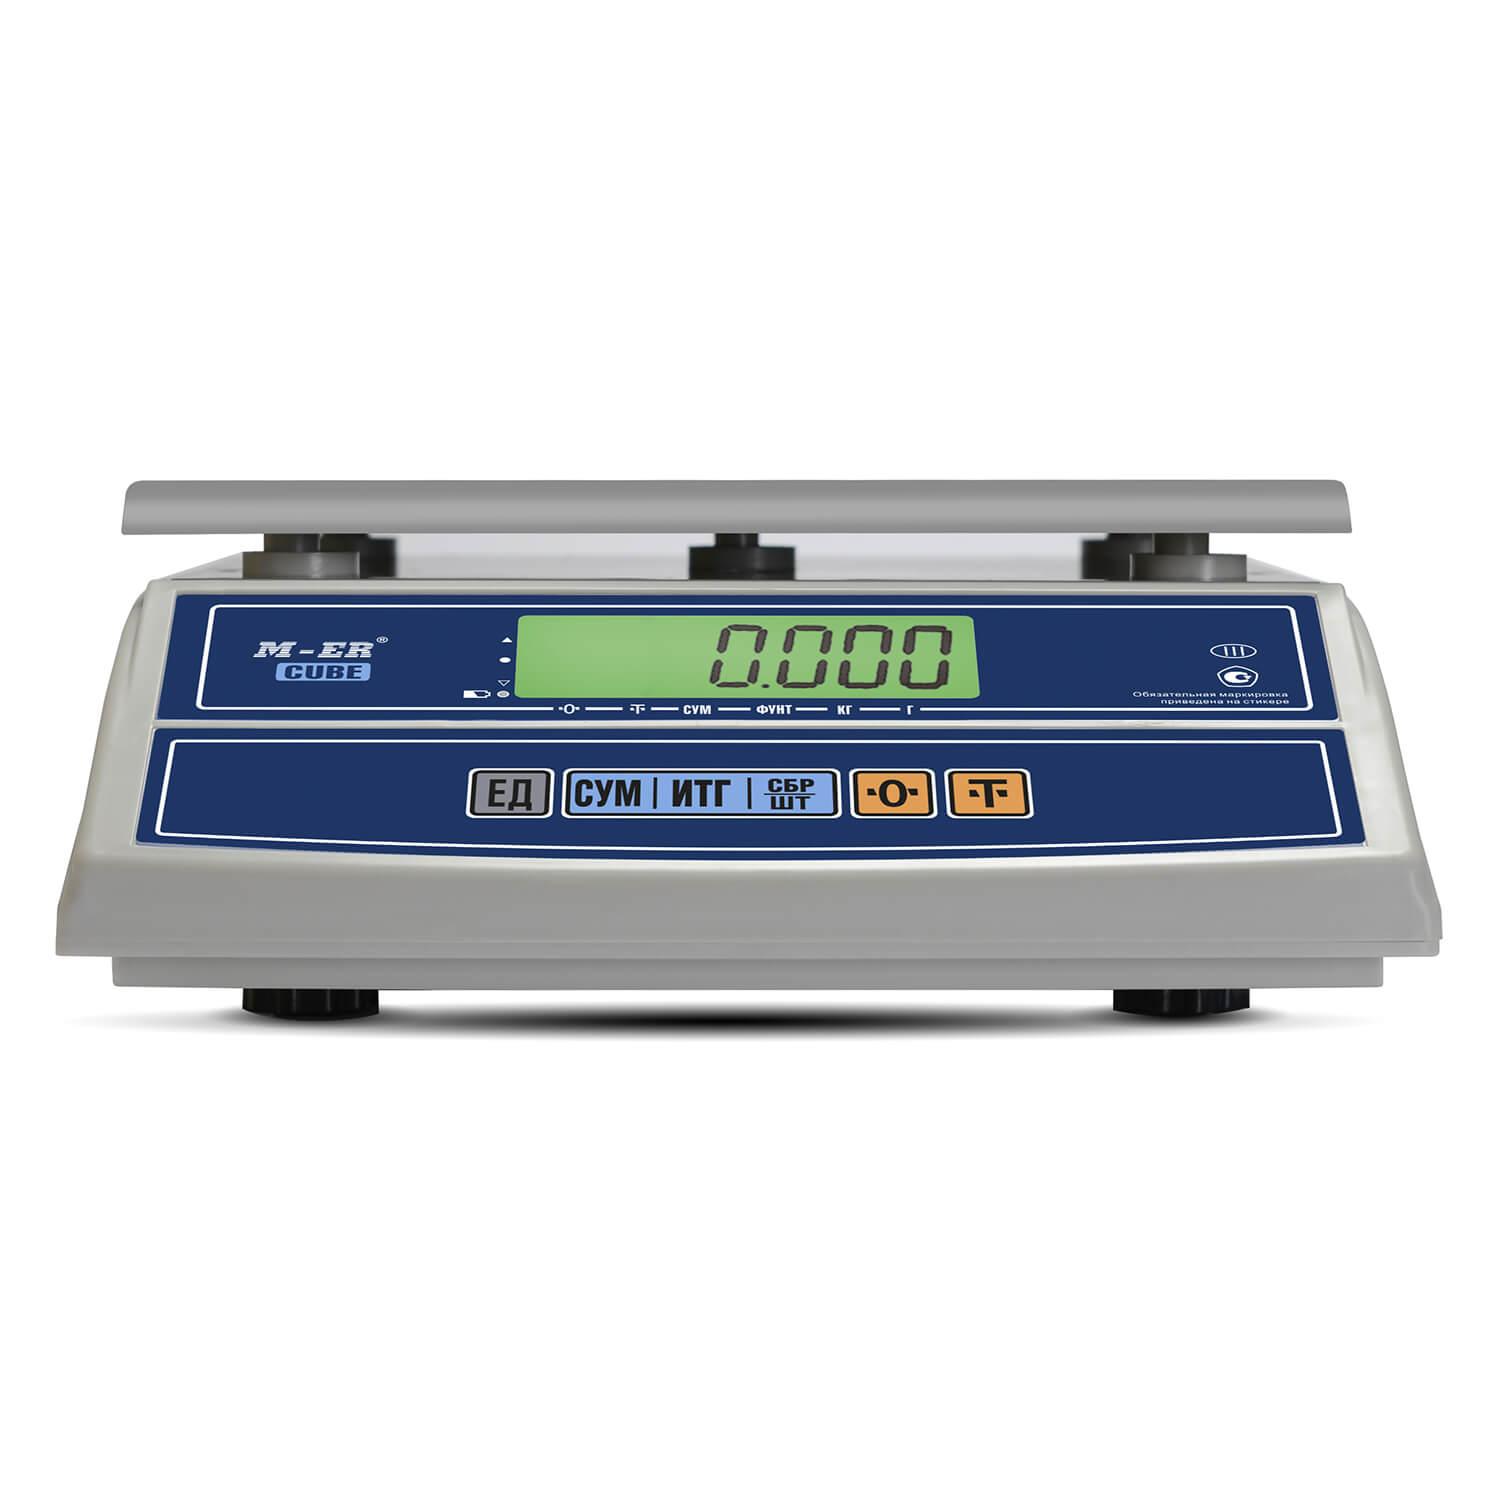 Фасовочные настольные весы M-ER 326 AF-15.2 "Cube" LCD (3053)